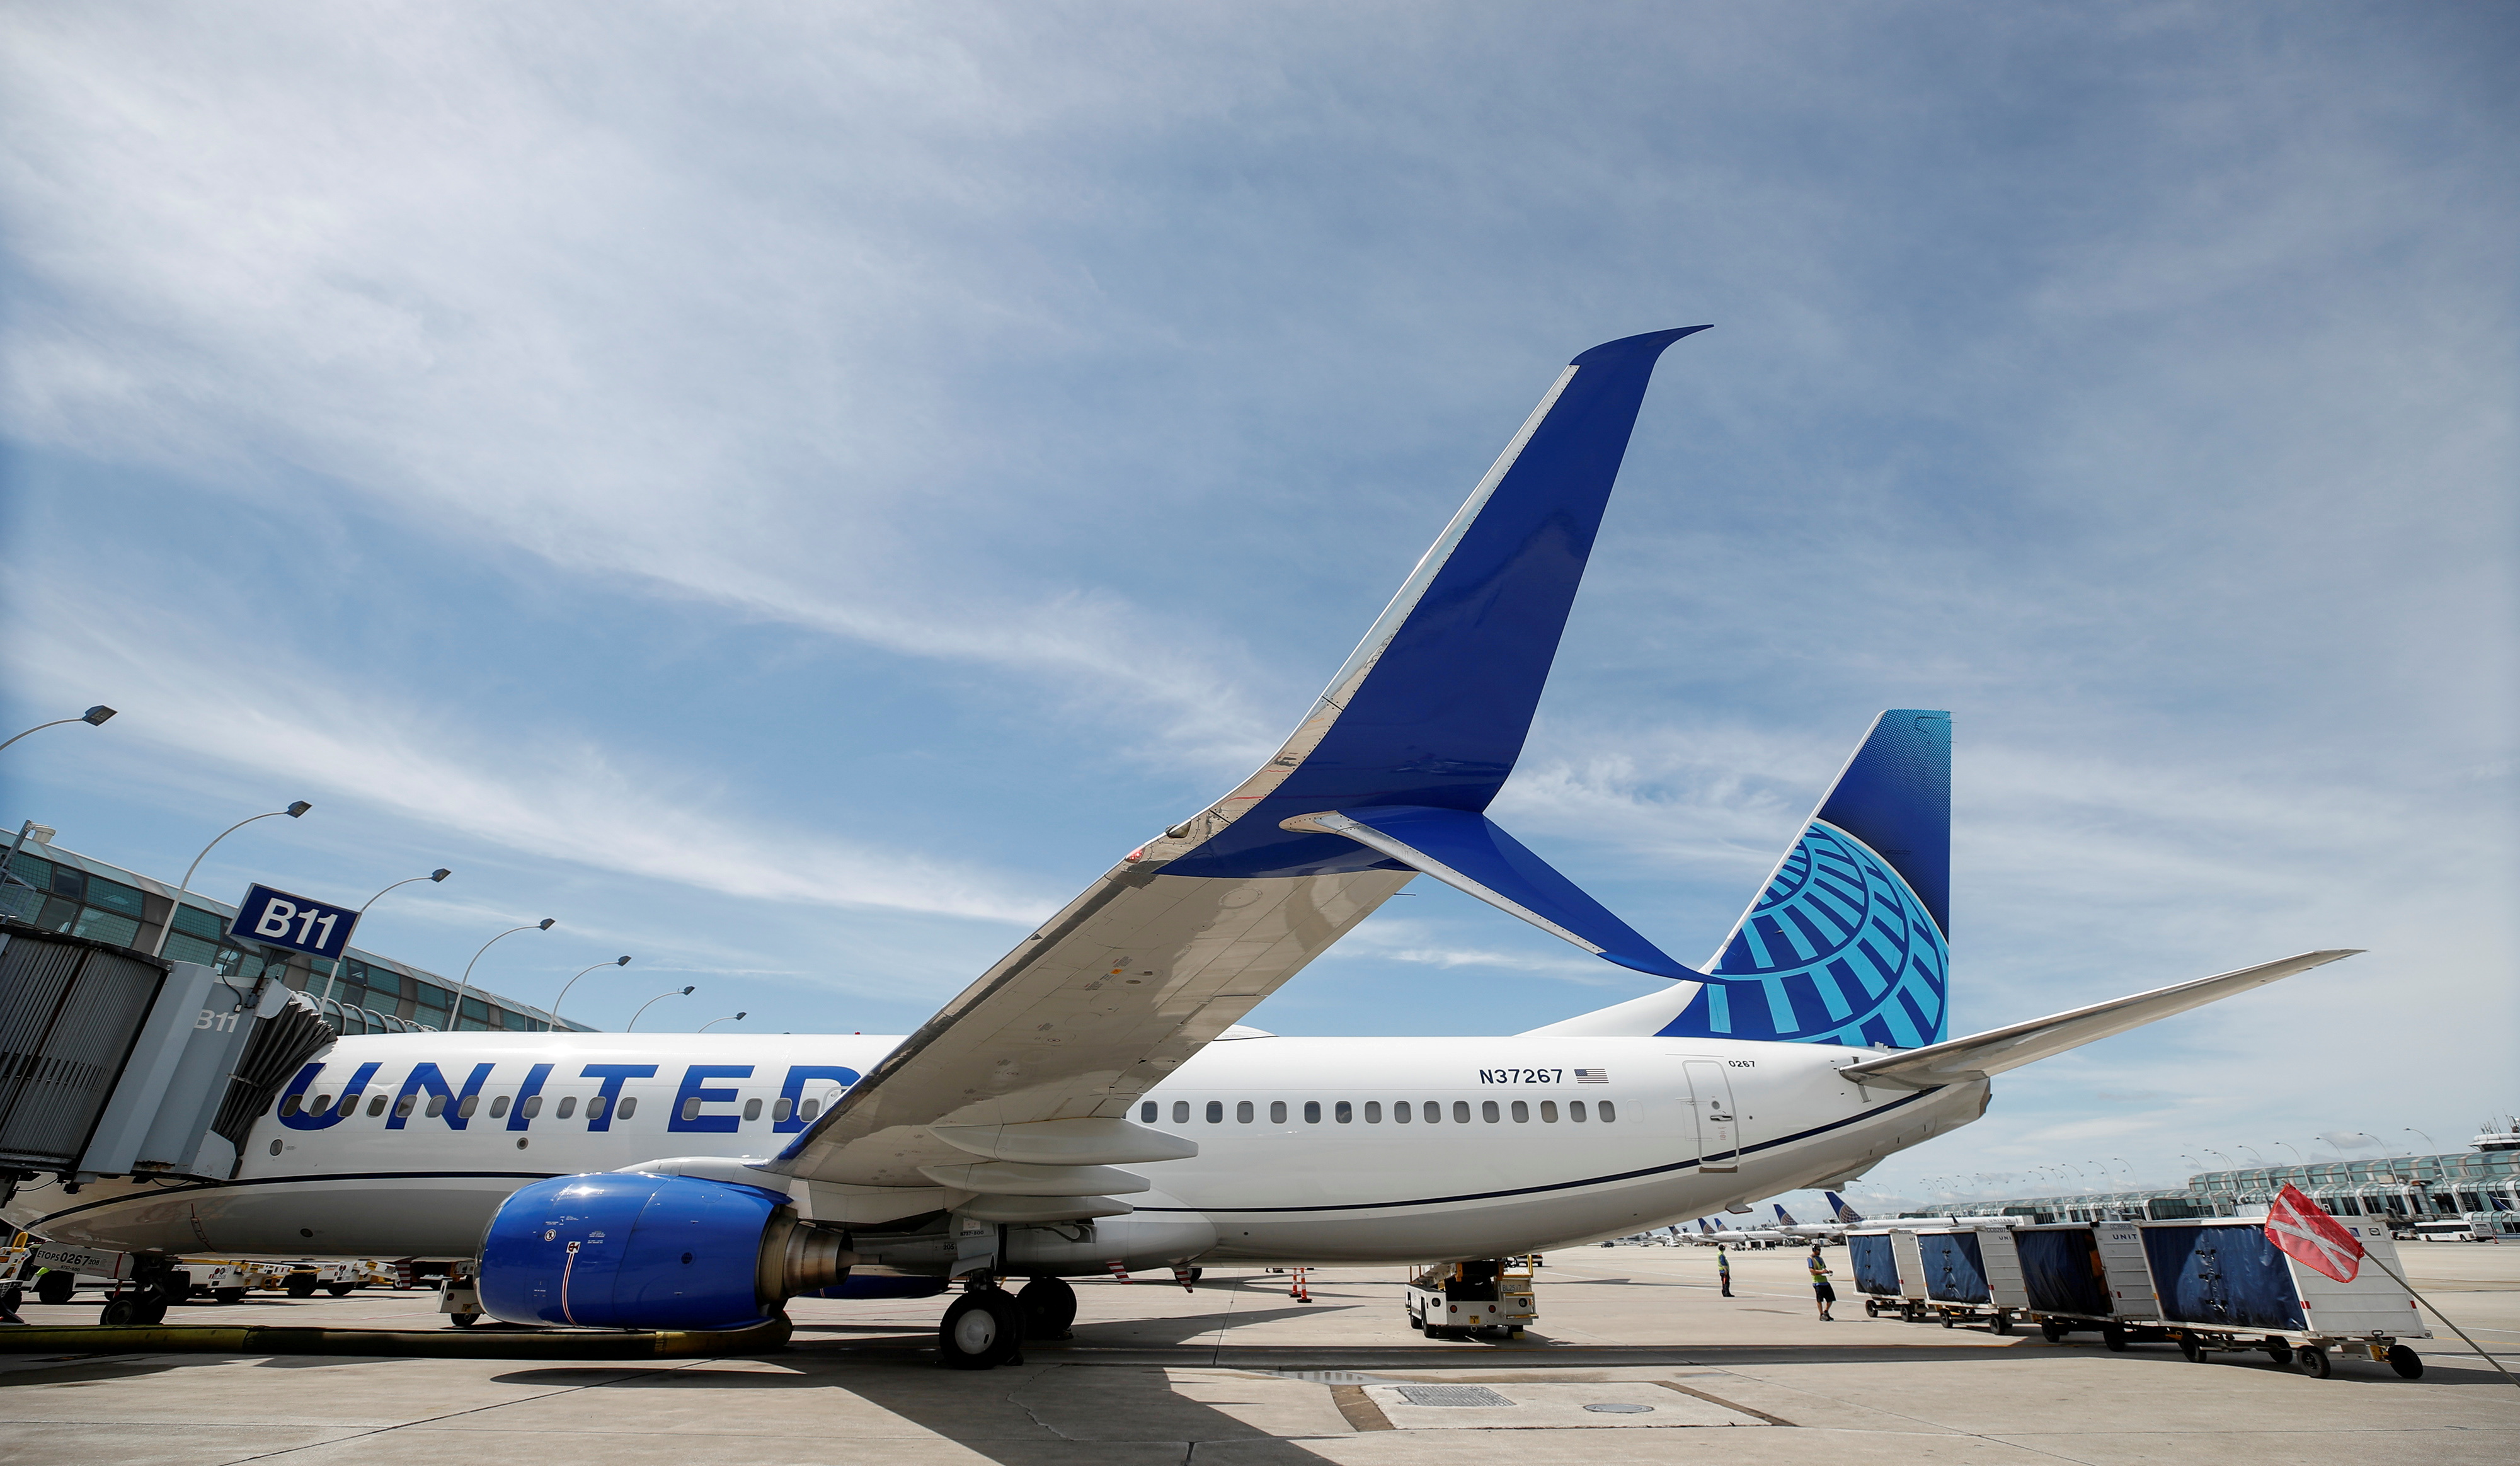 United Airlines Boeing 737-800 se sienta en una puerta después de llegar al Aeropuerto Internacional O'Hare en Chicago, Illinois, EE. UU. el 5 de junio de 2019.  REUTERS/Kamil Krzaczynski